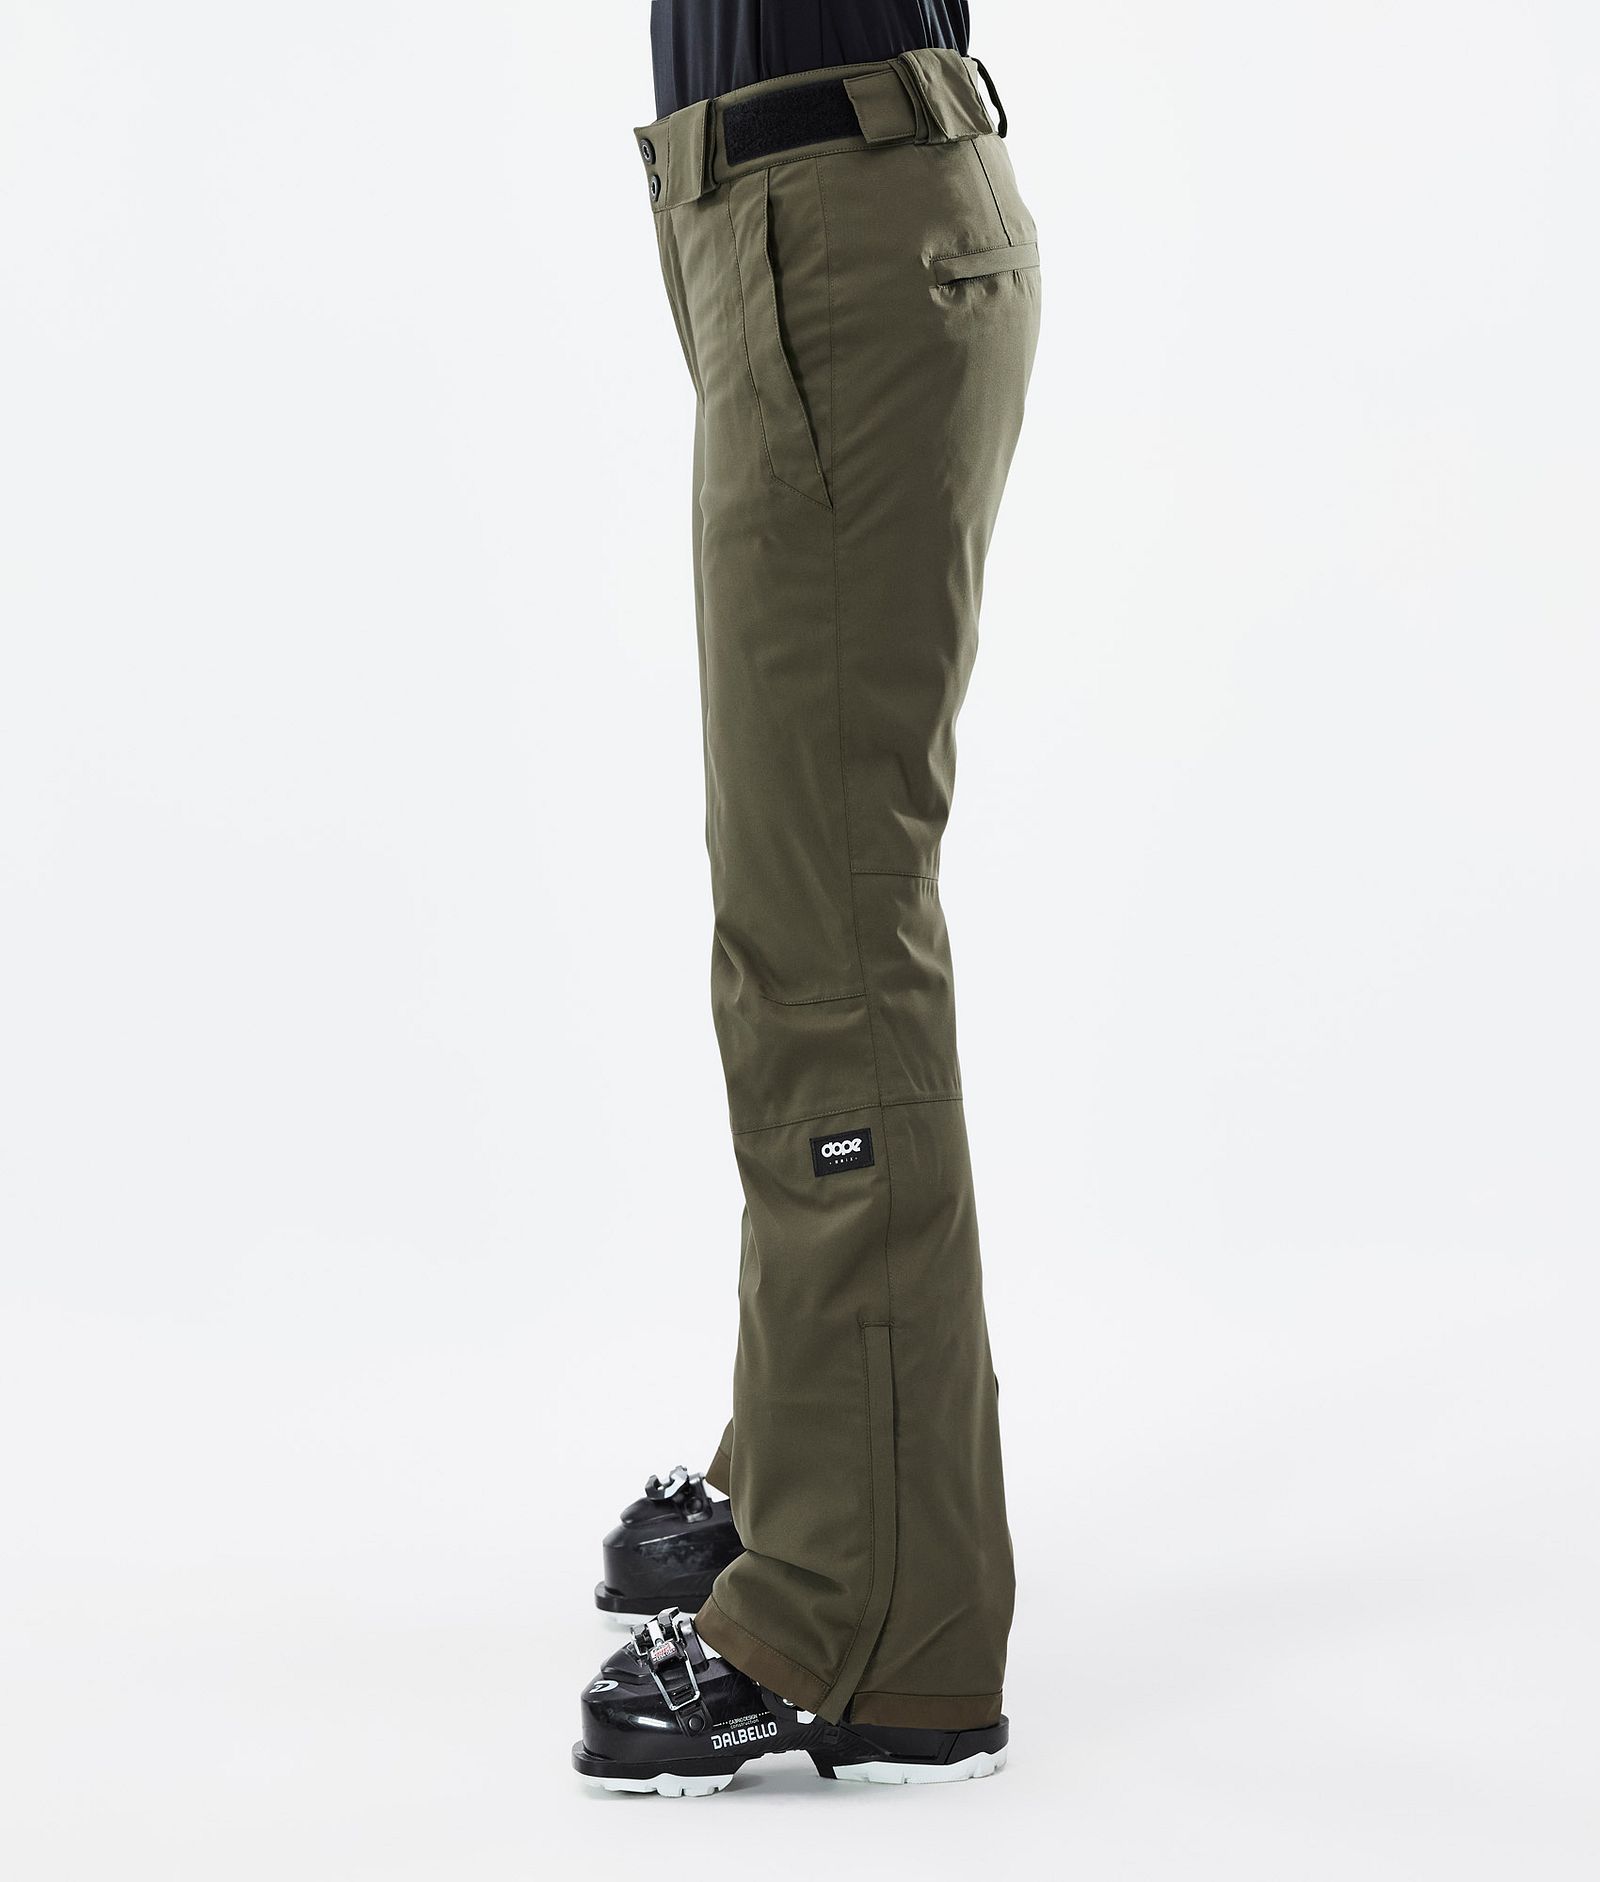 Con W 2022 Pantalon de Ski Femme Olive Green, Image 2 sur 5